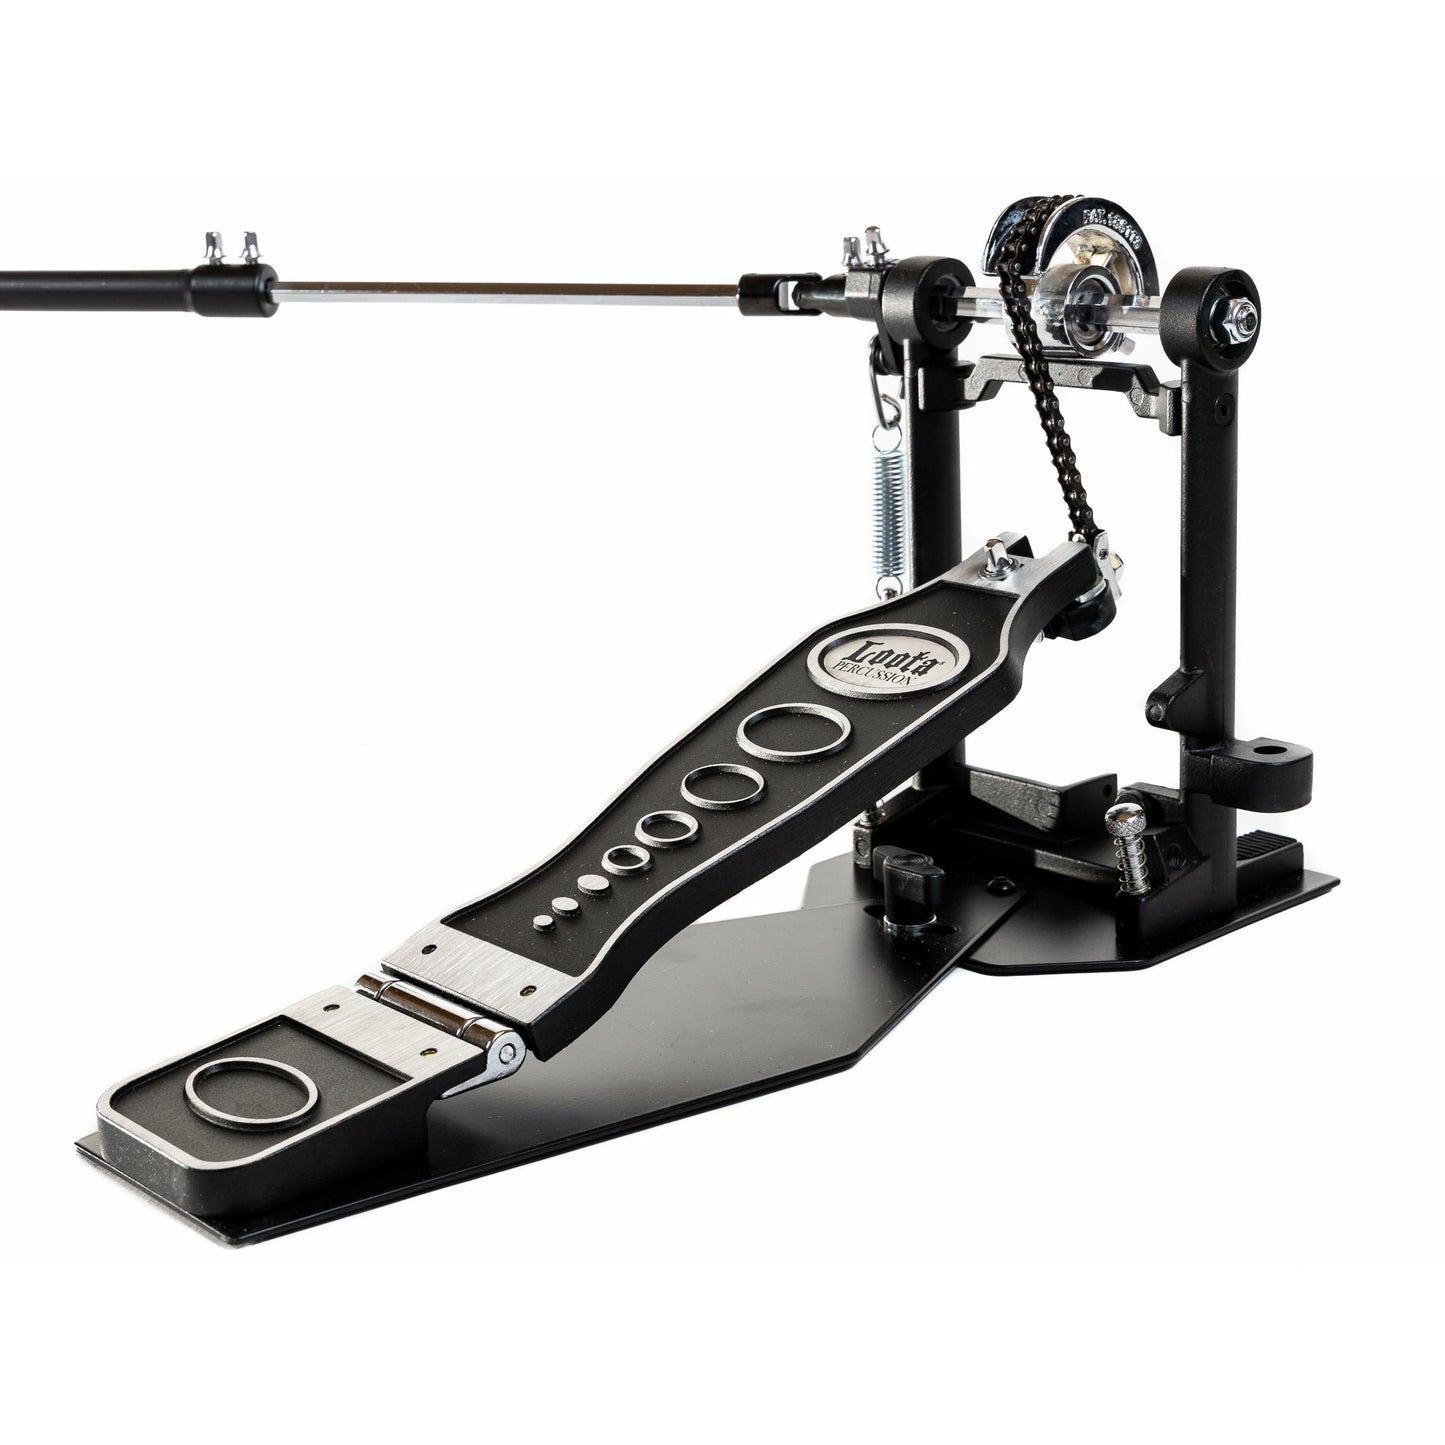 Loota Percussion pedal